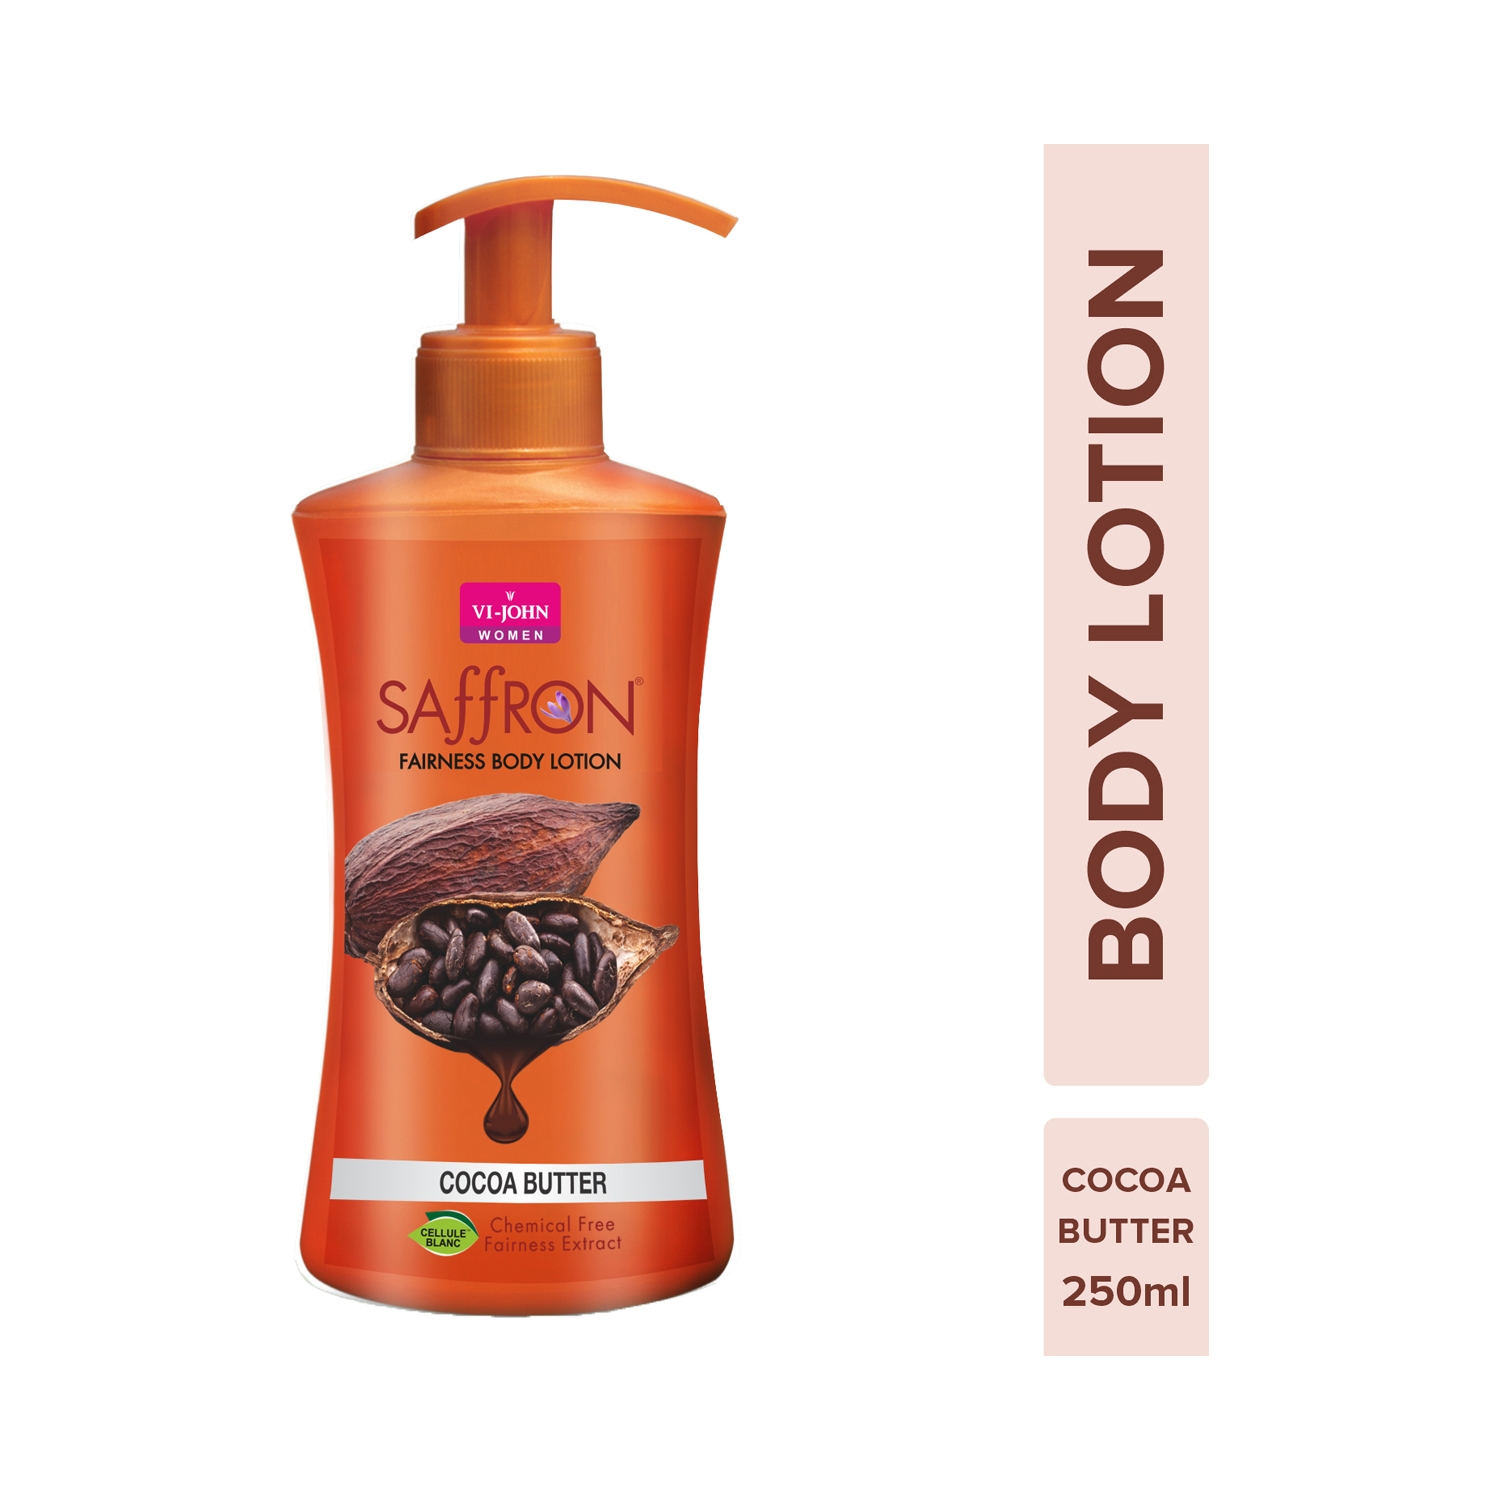 VI-JOHN Saffron Cocoa Butter Fairness Body Lotion (250ml)